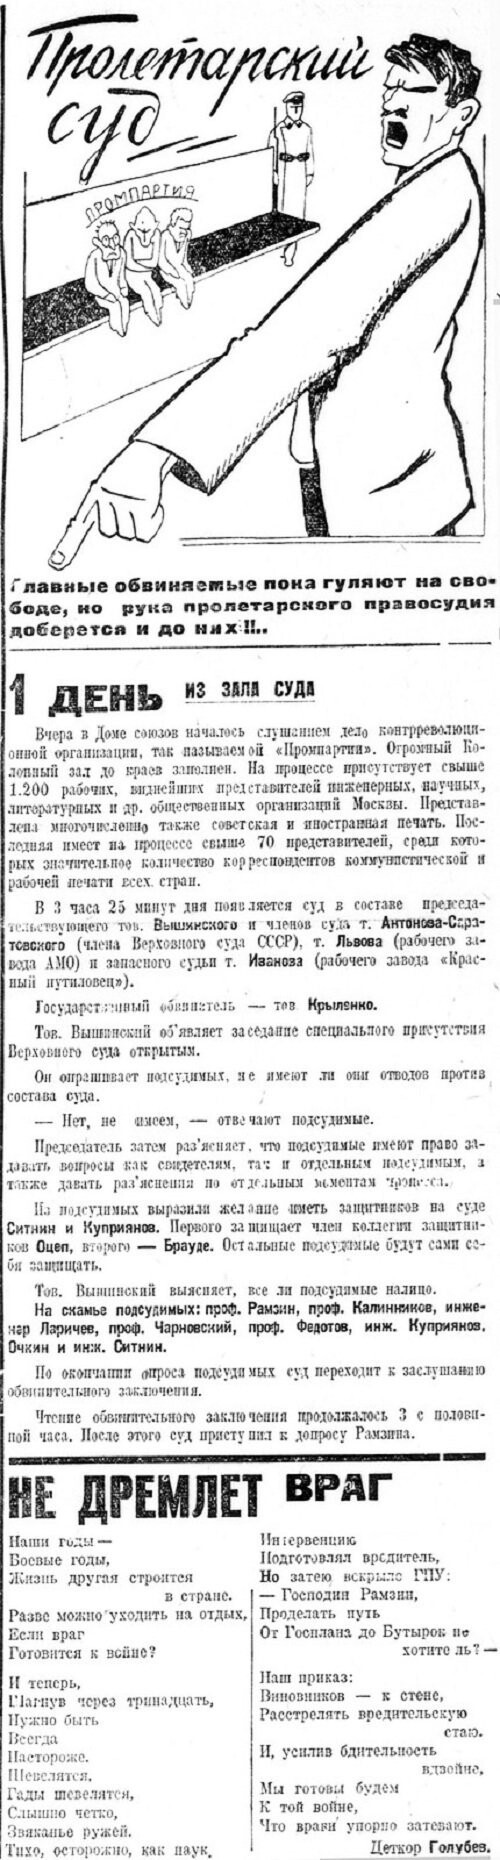 «Пионерская правда», 27 ноября 1930 г.